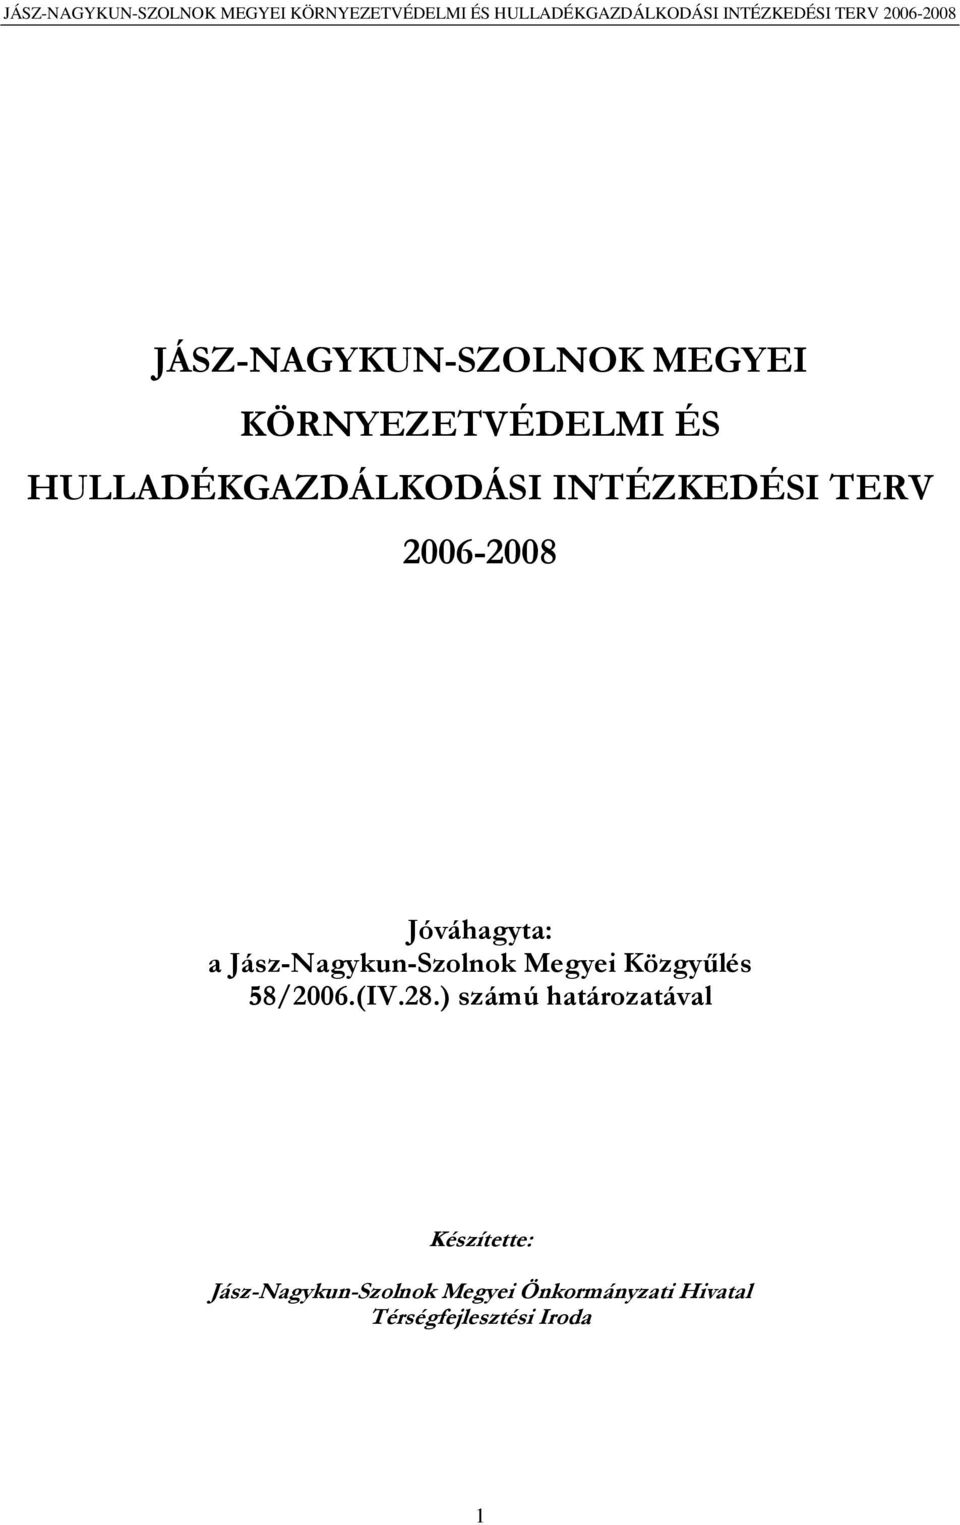 Jász-Nagykun-Szolnok Megyei Közgyűlés 58/2006.(IV.28.